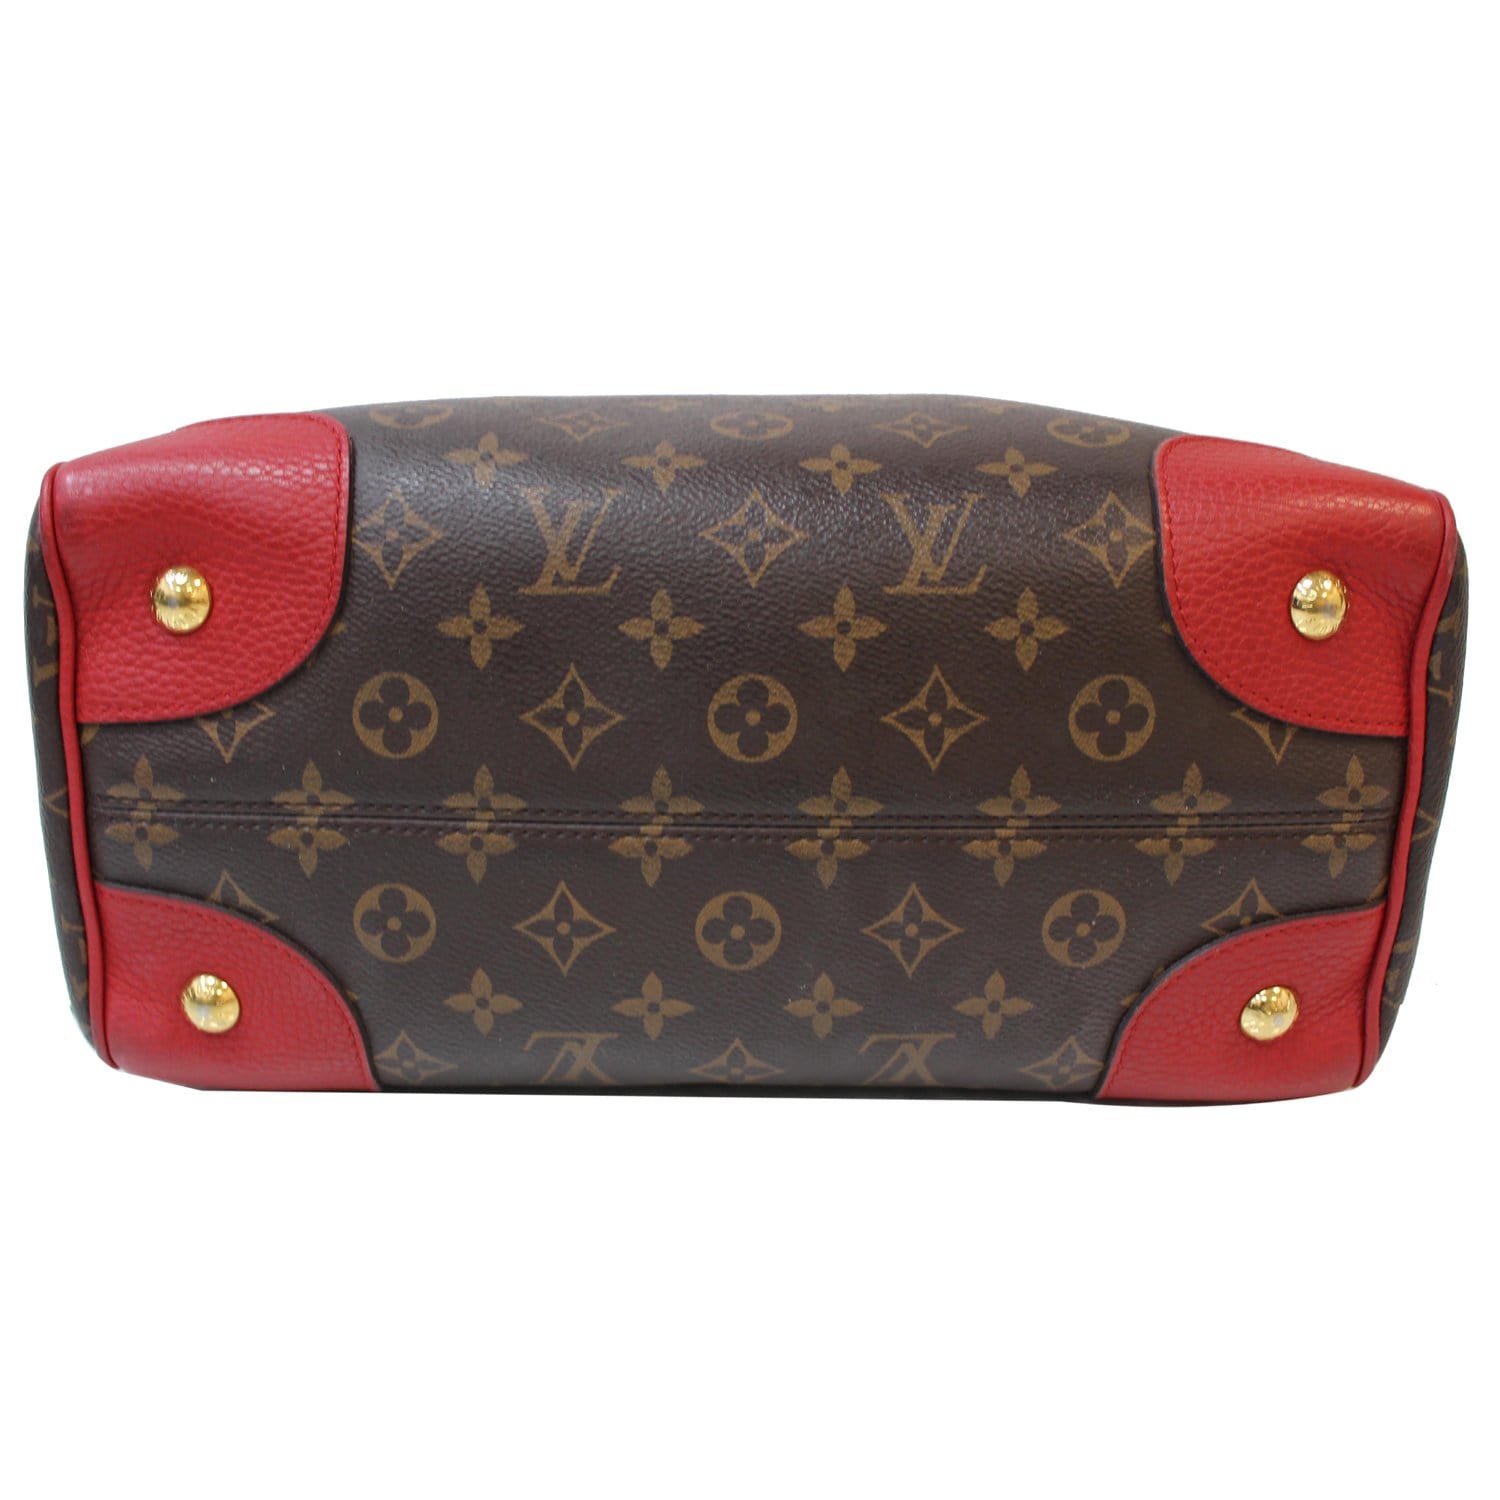 Louis Vuitton RETIRO NM/ What's in my bag? 